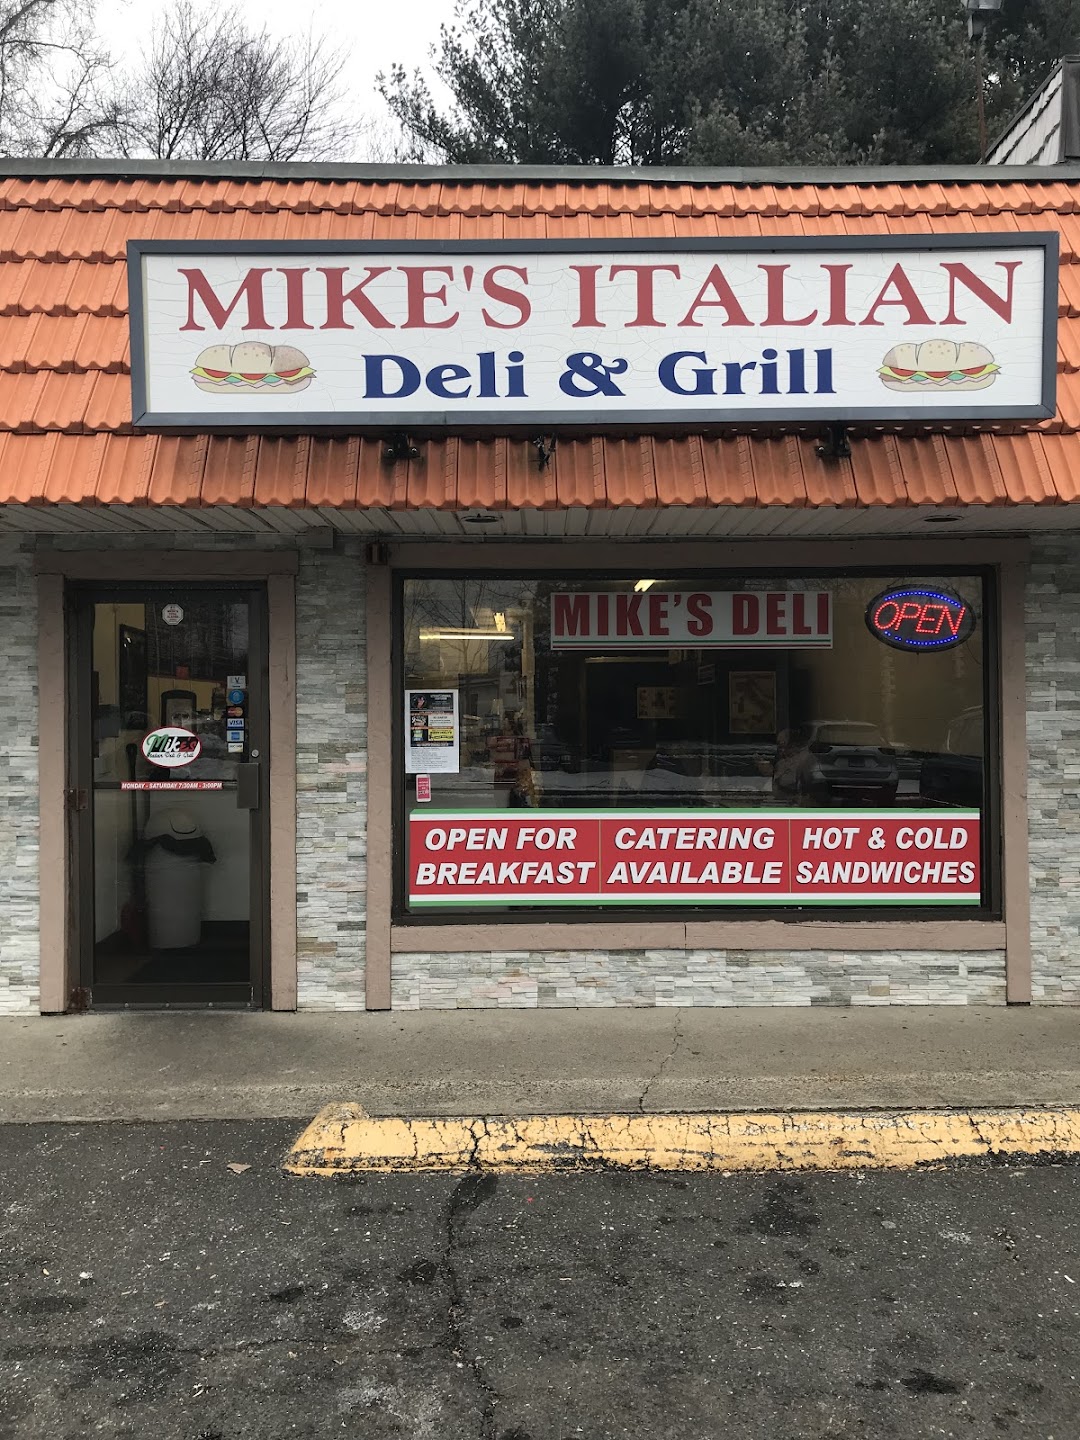 Mikes Italian Deli & Grill